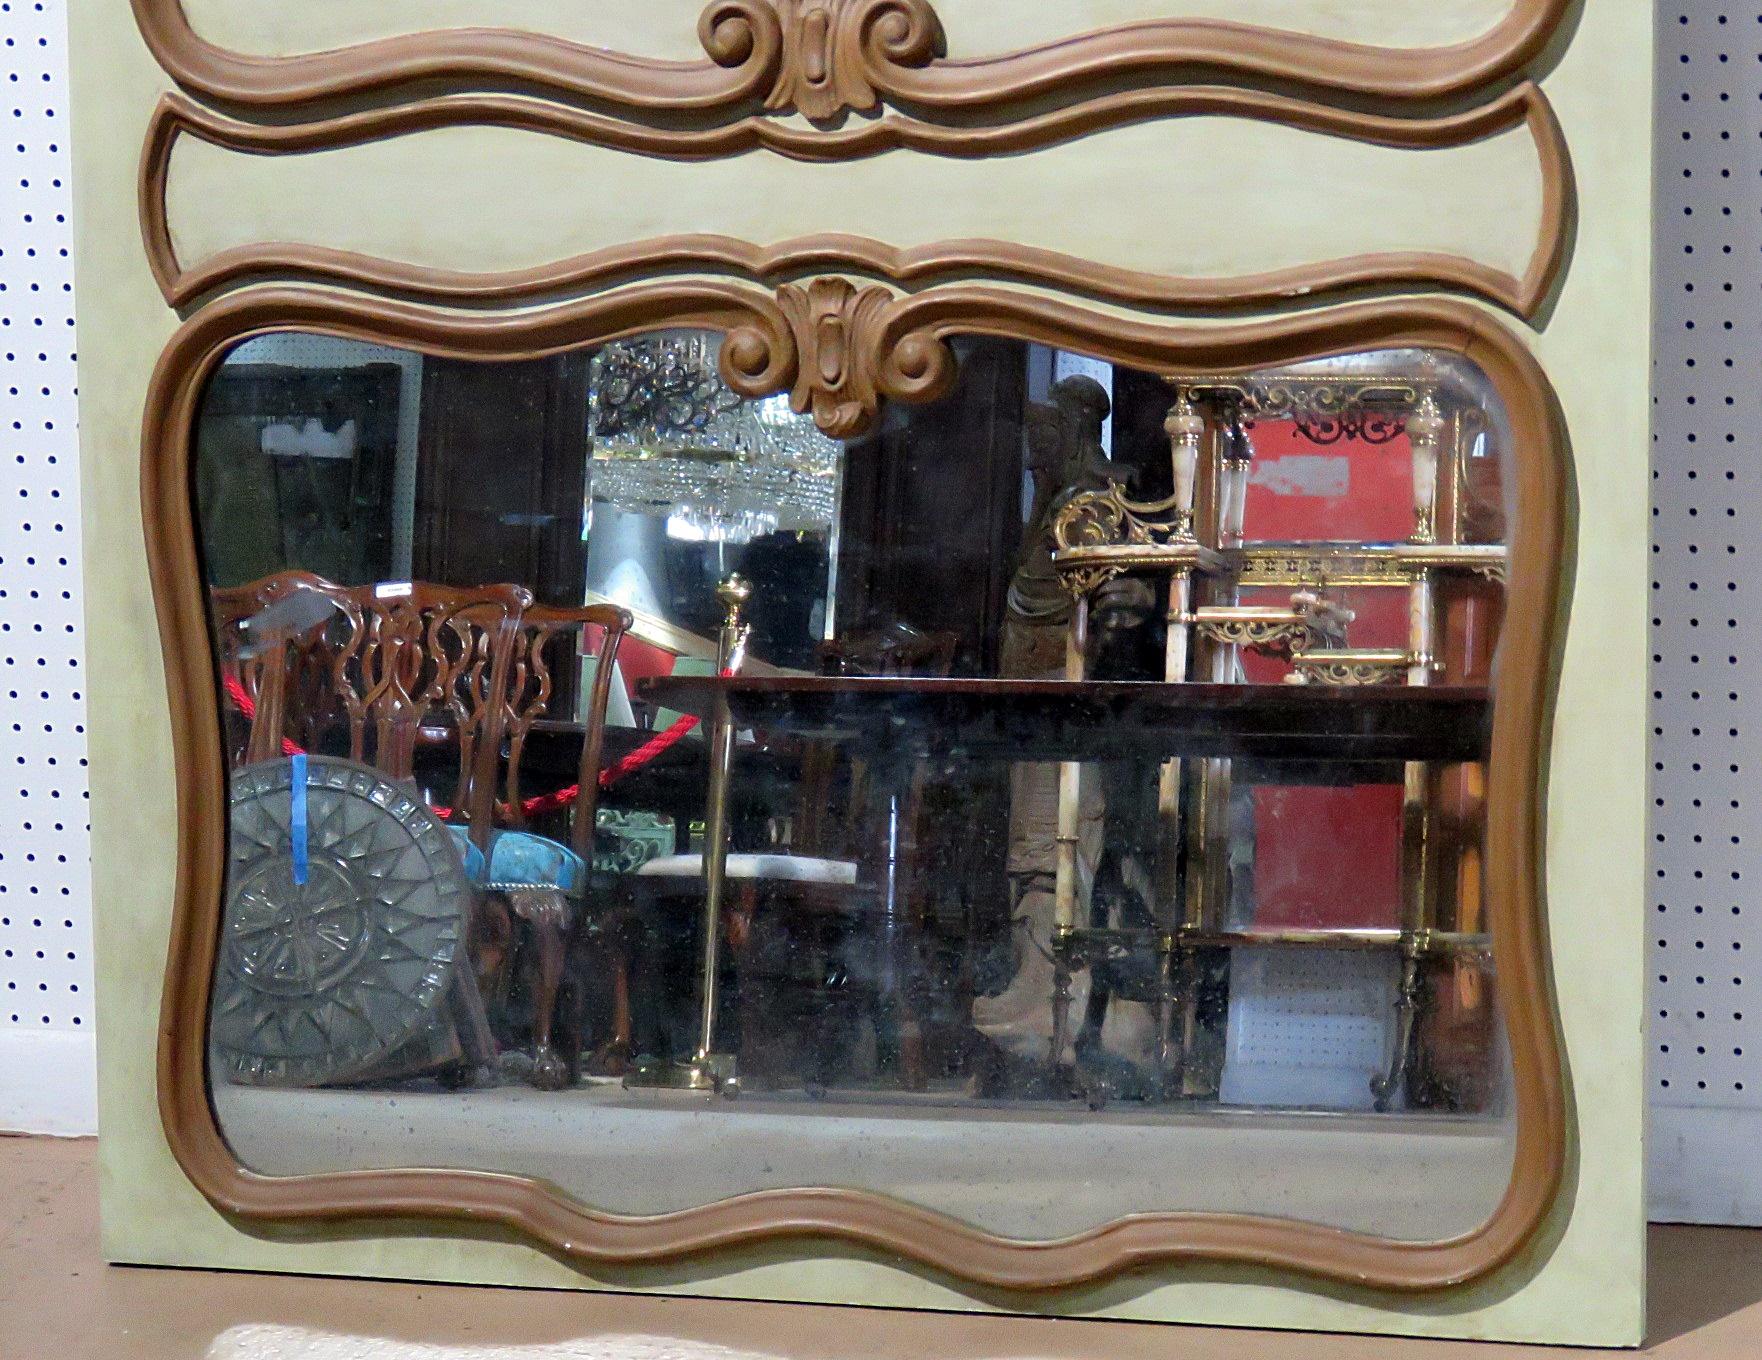 Ce magnifique miroir de fabrication italienne a été conçu pour reproduire parfaitement un beau miroir trumeau français ancien. La sculpture est serrée et précise et le miroir est grand et fera un point focal dynamique dans votre maison. 